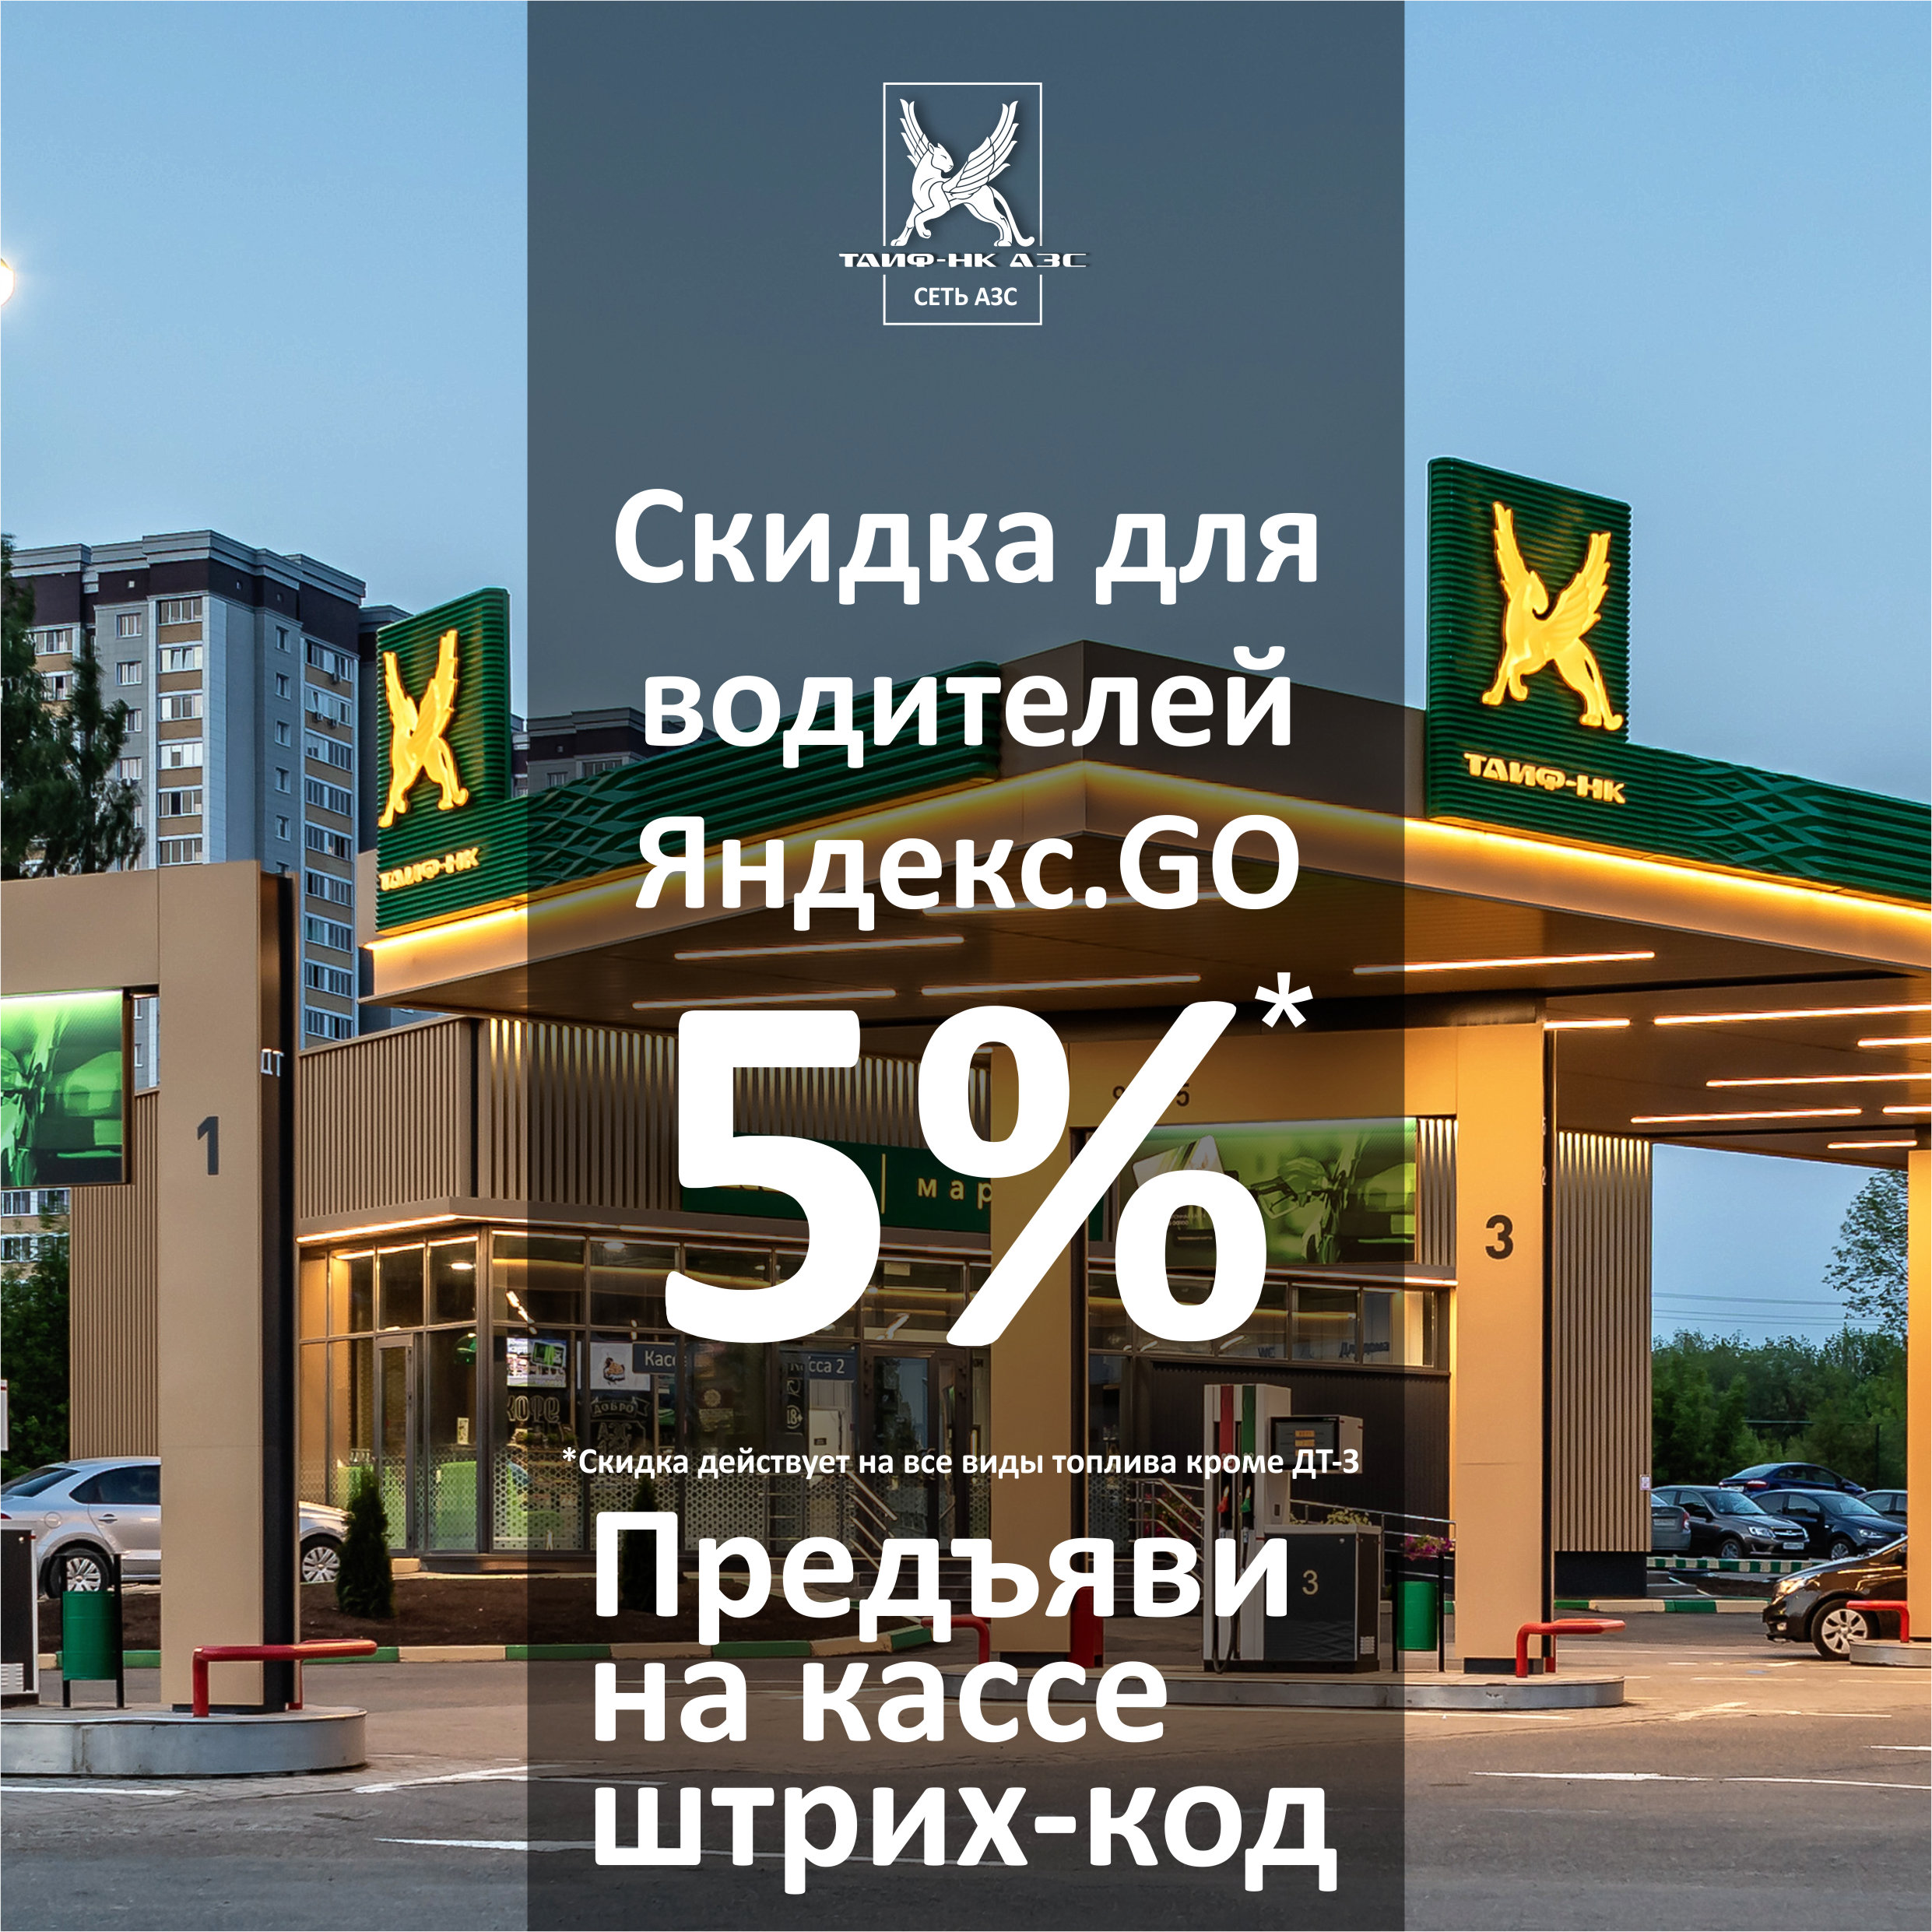 Акция для водителей "Яндекс.GO"